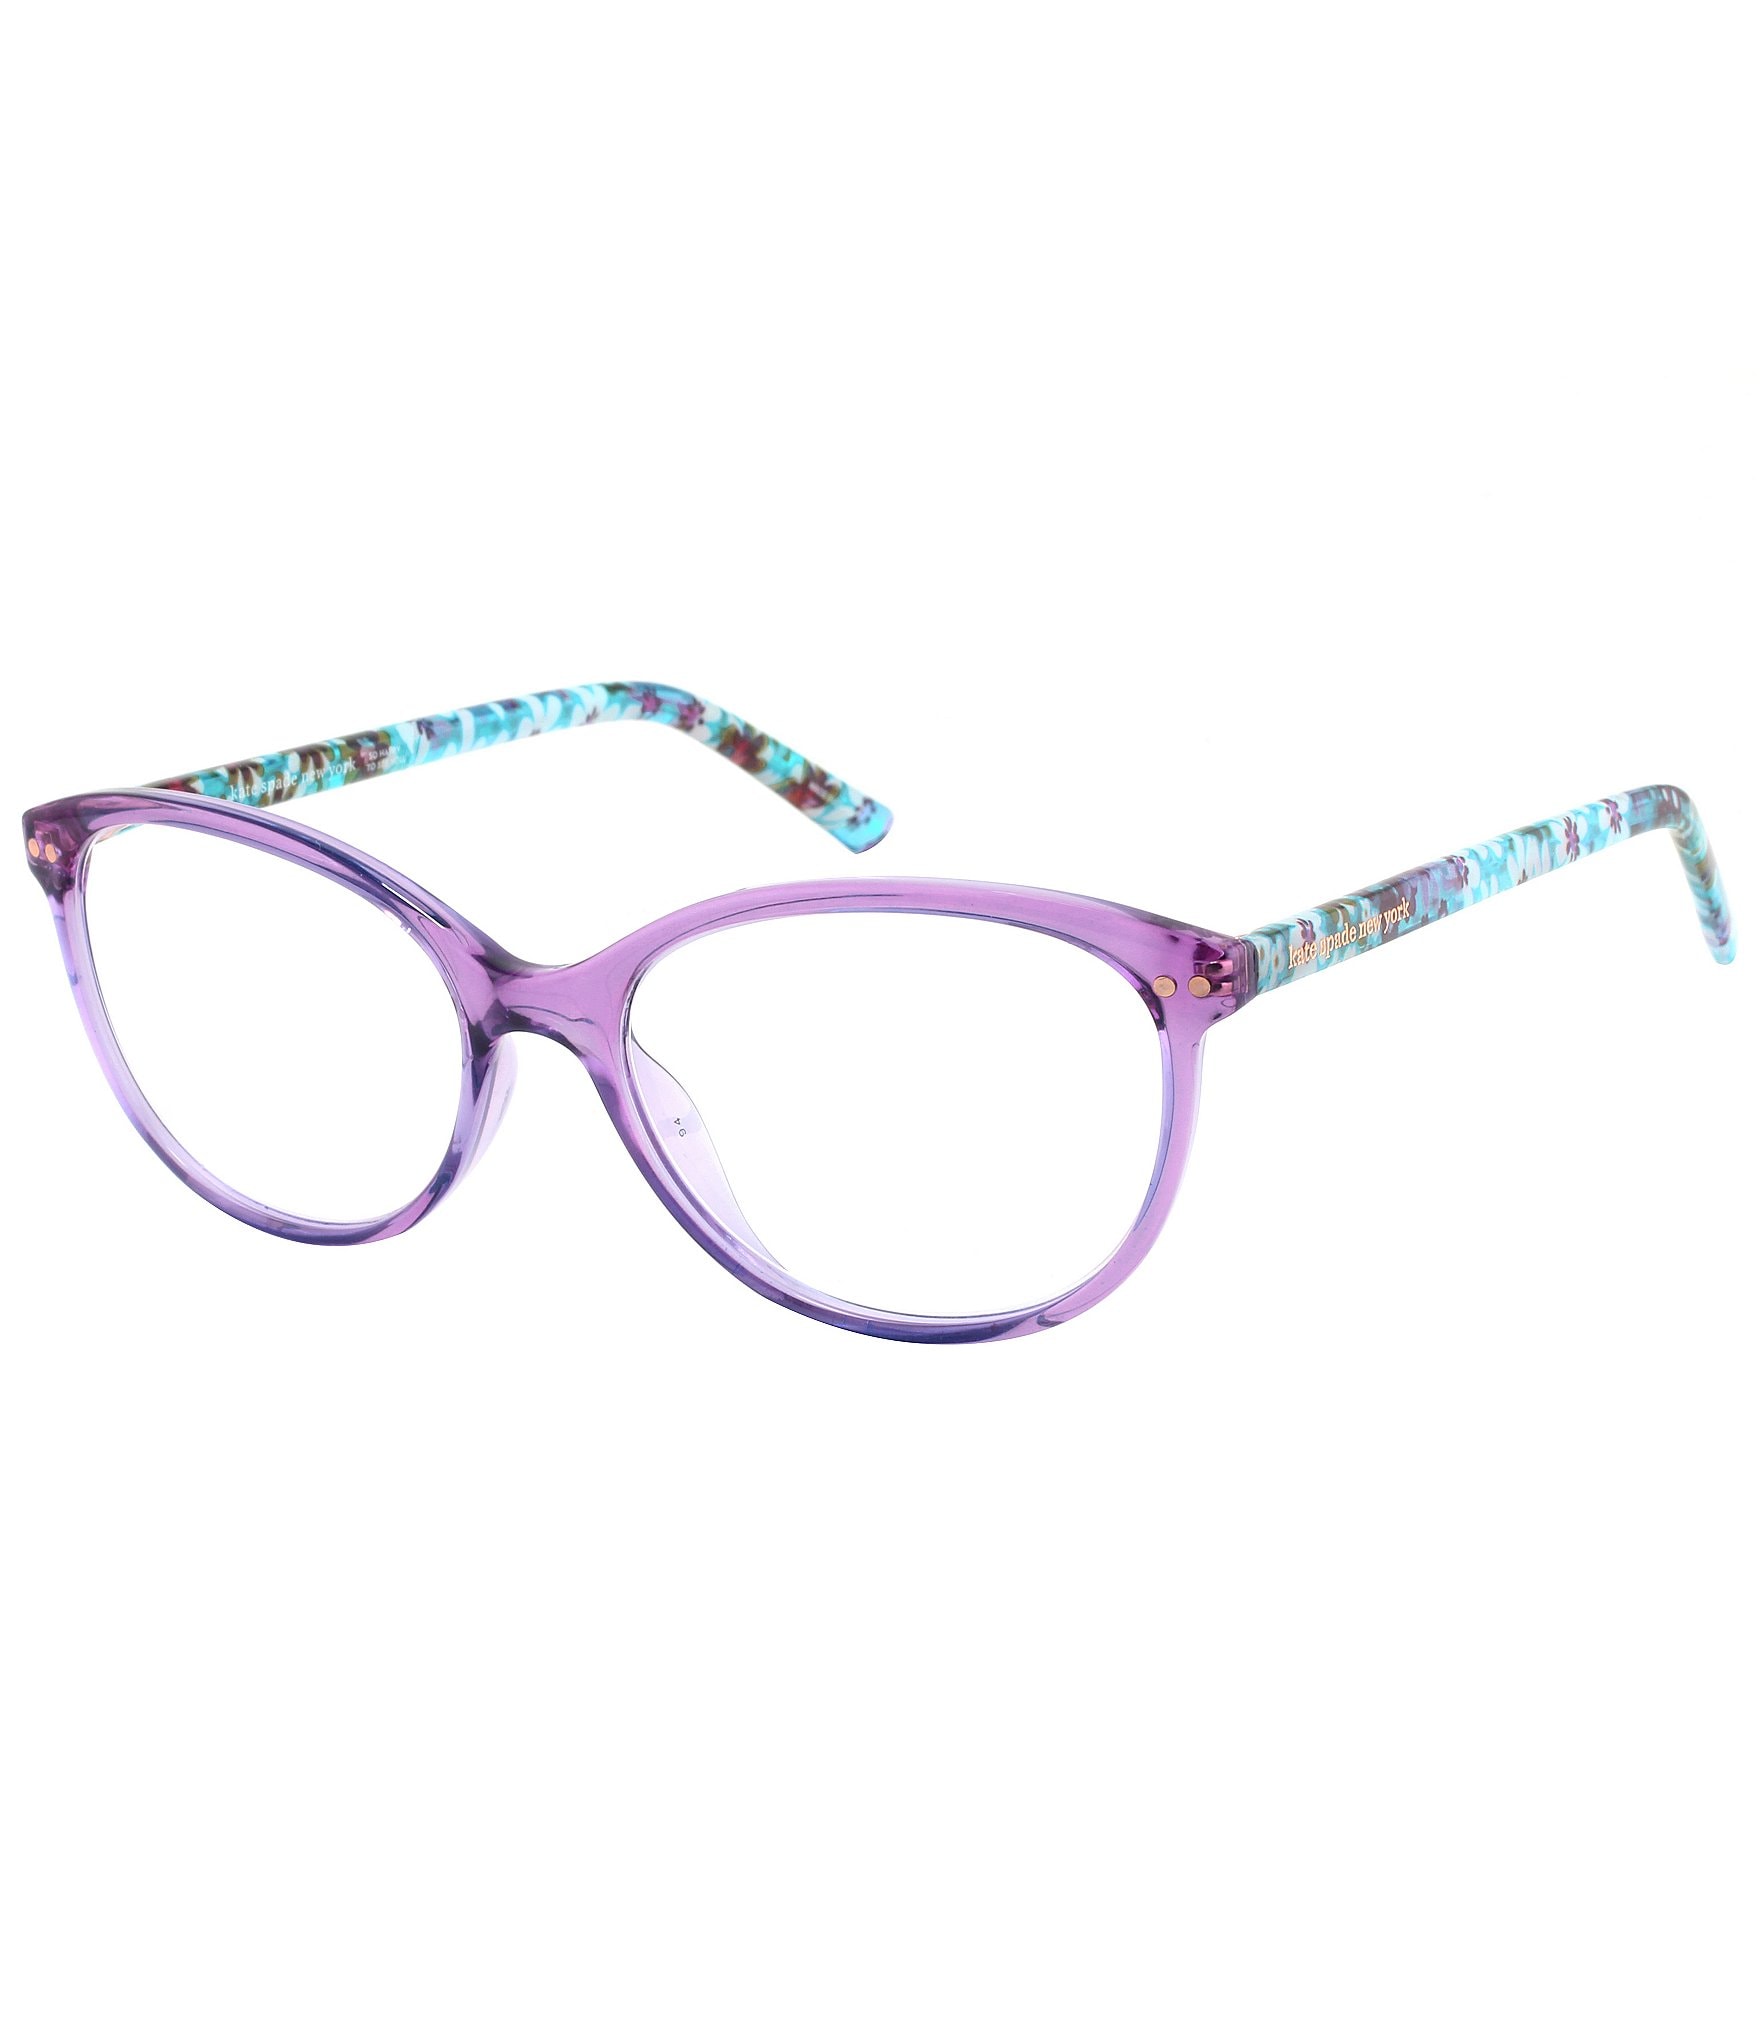 Kate Spade WANDA glasses, Free prescription lenses